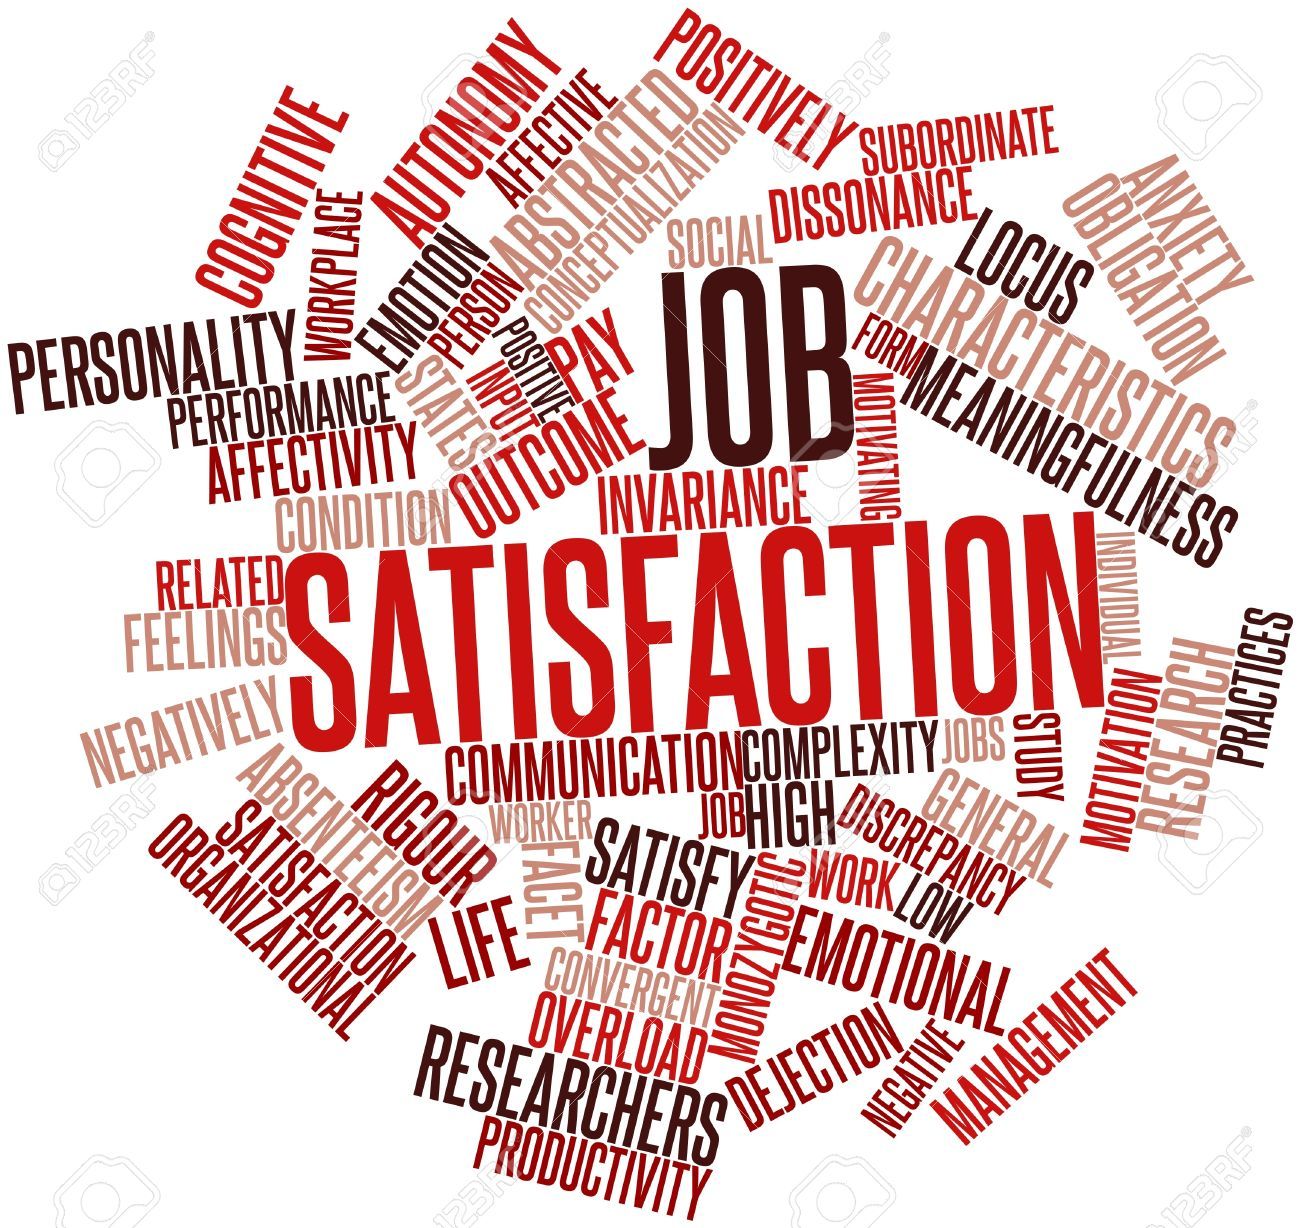 Job satisfaction clipart 7 » Clipart Portal.